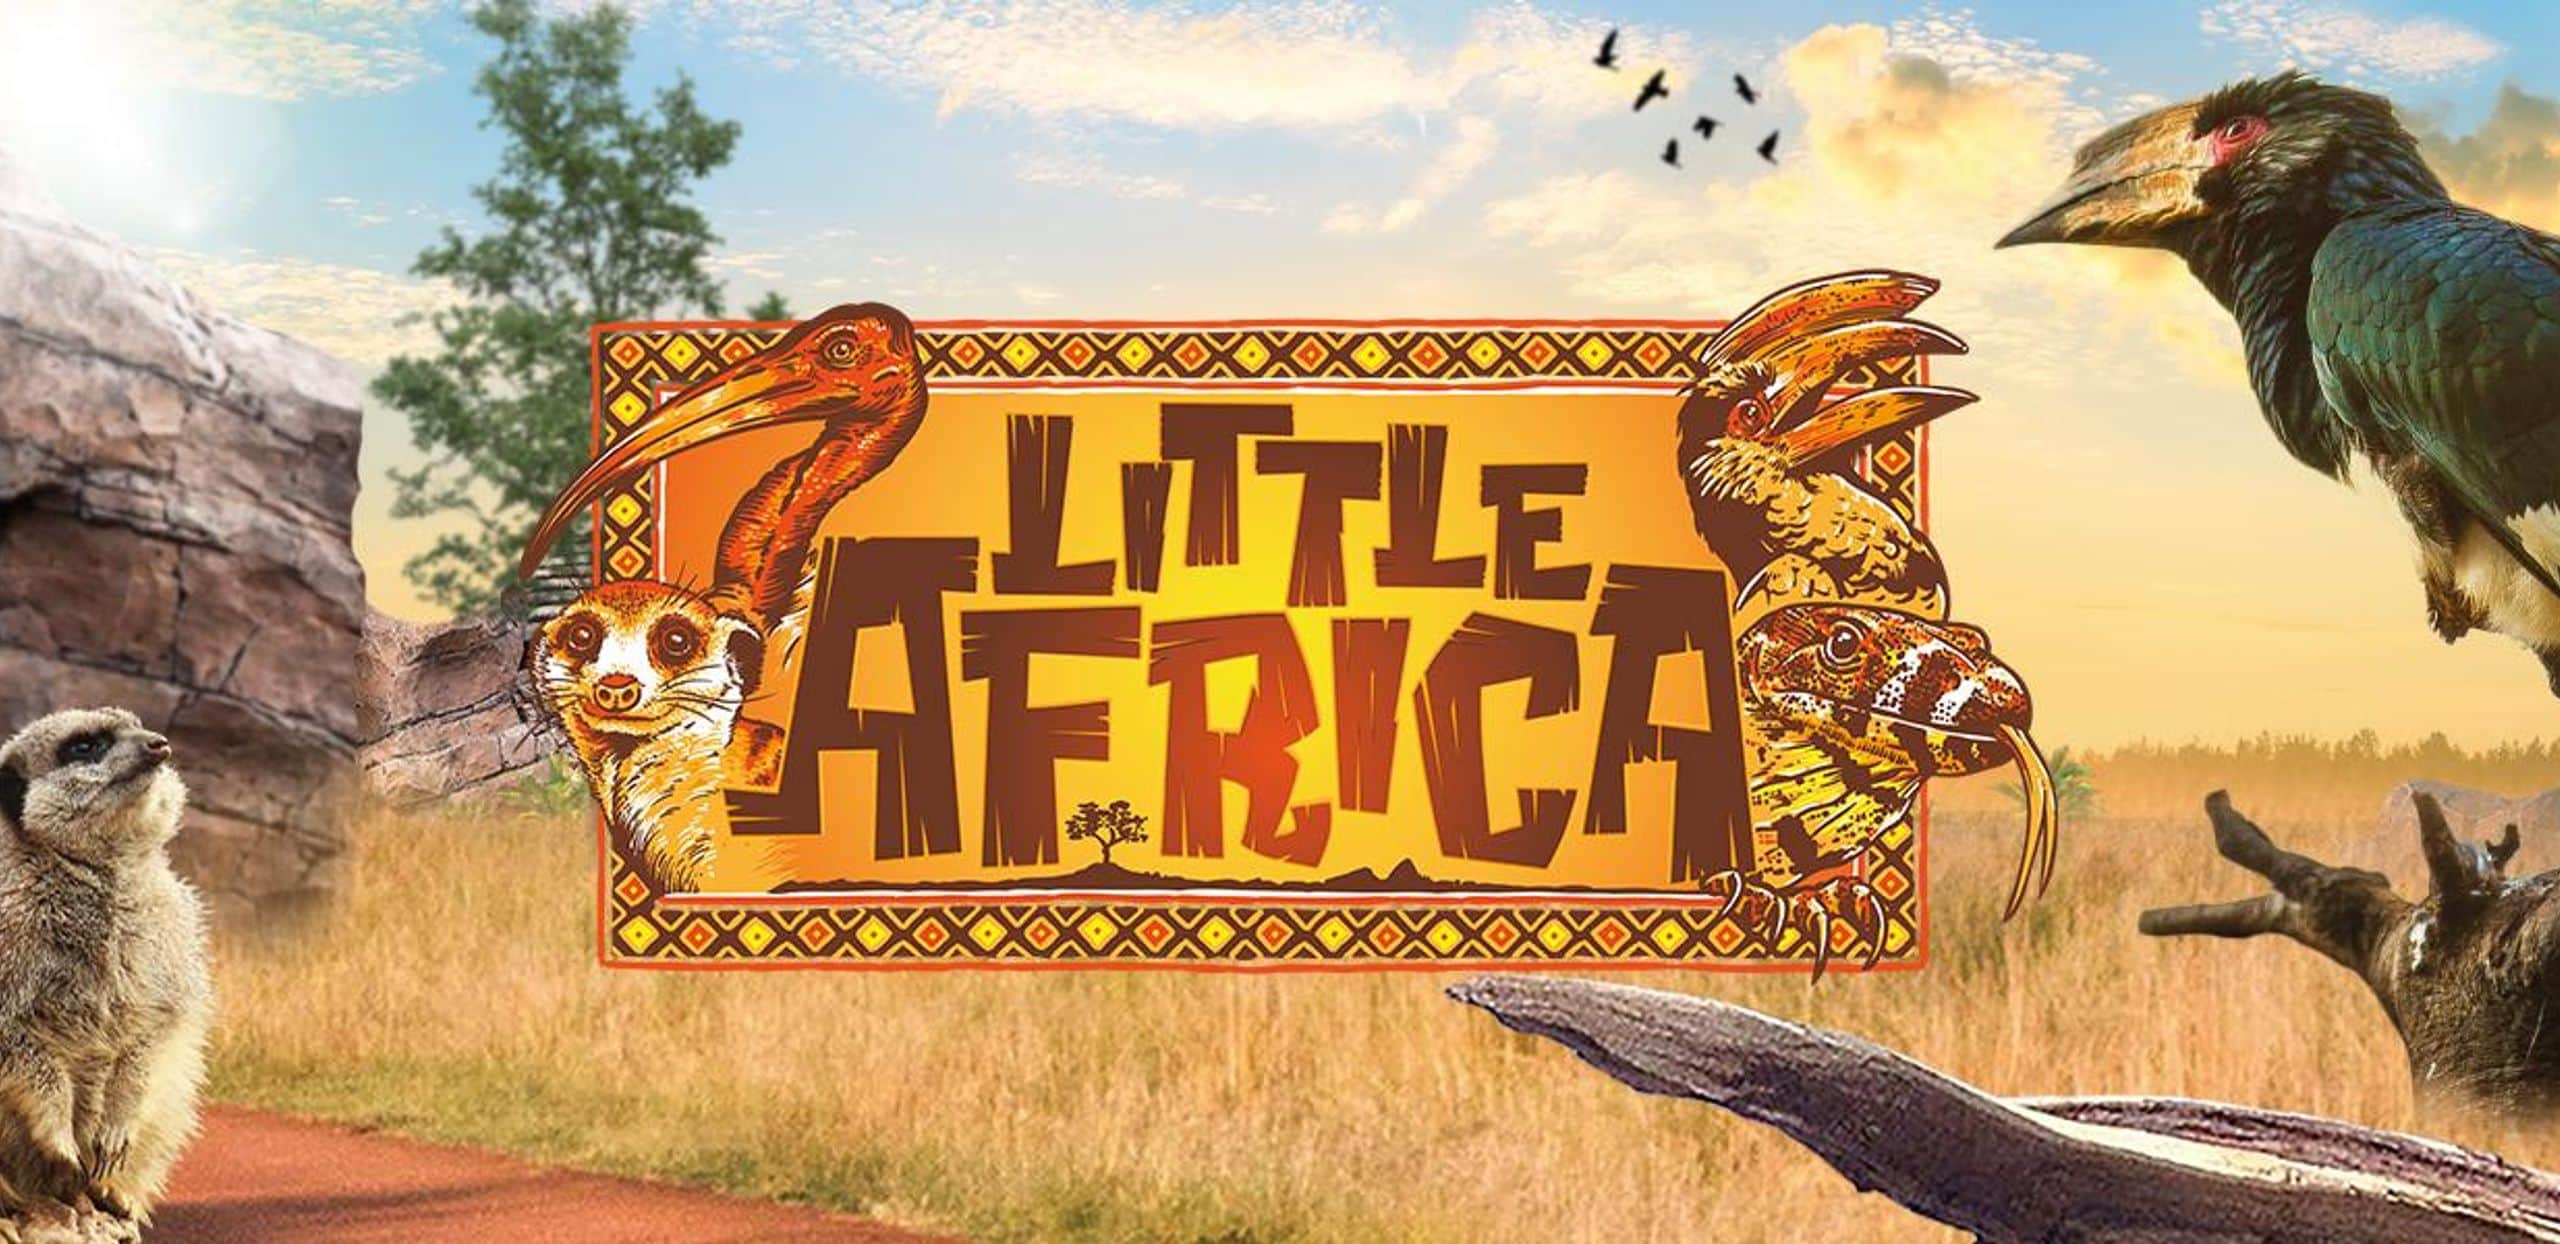 Little Africa banner